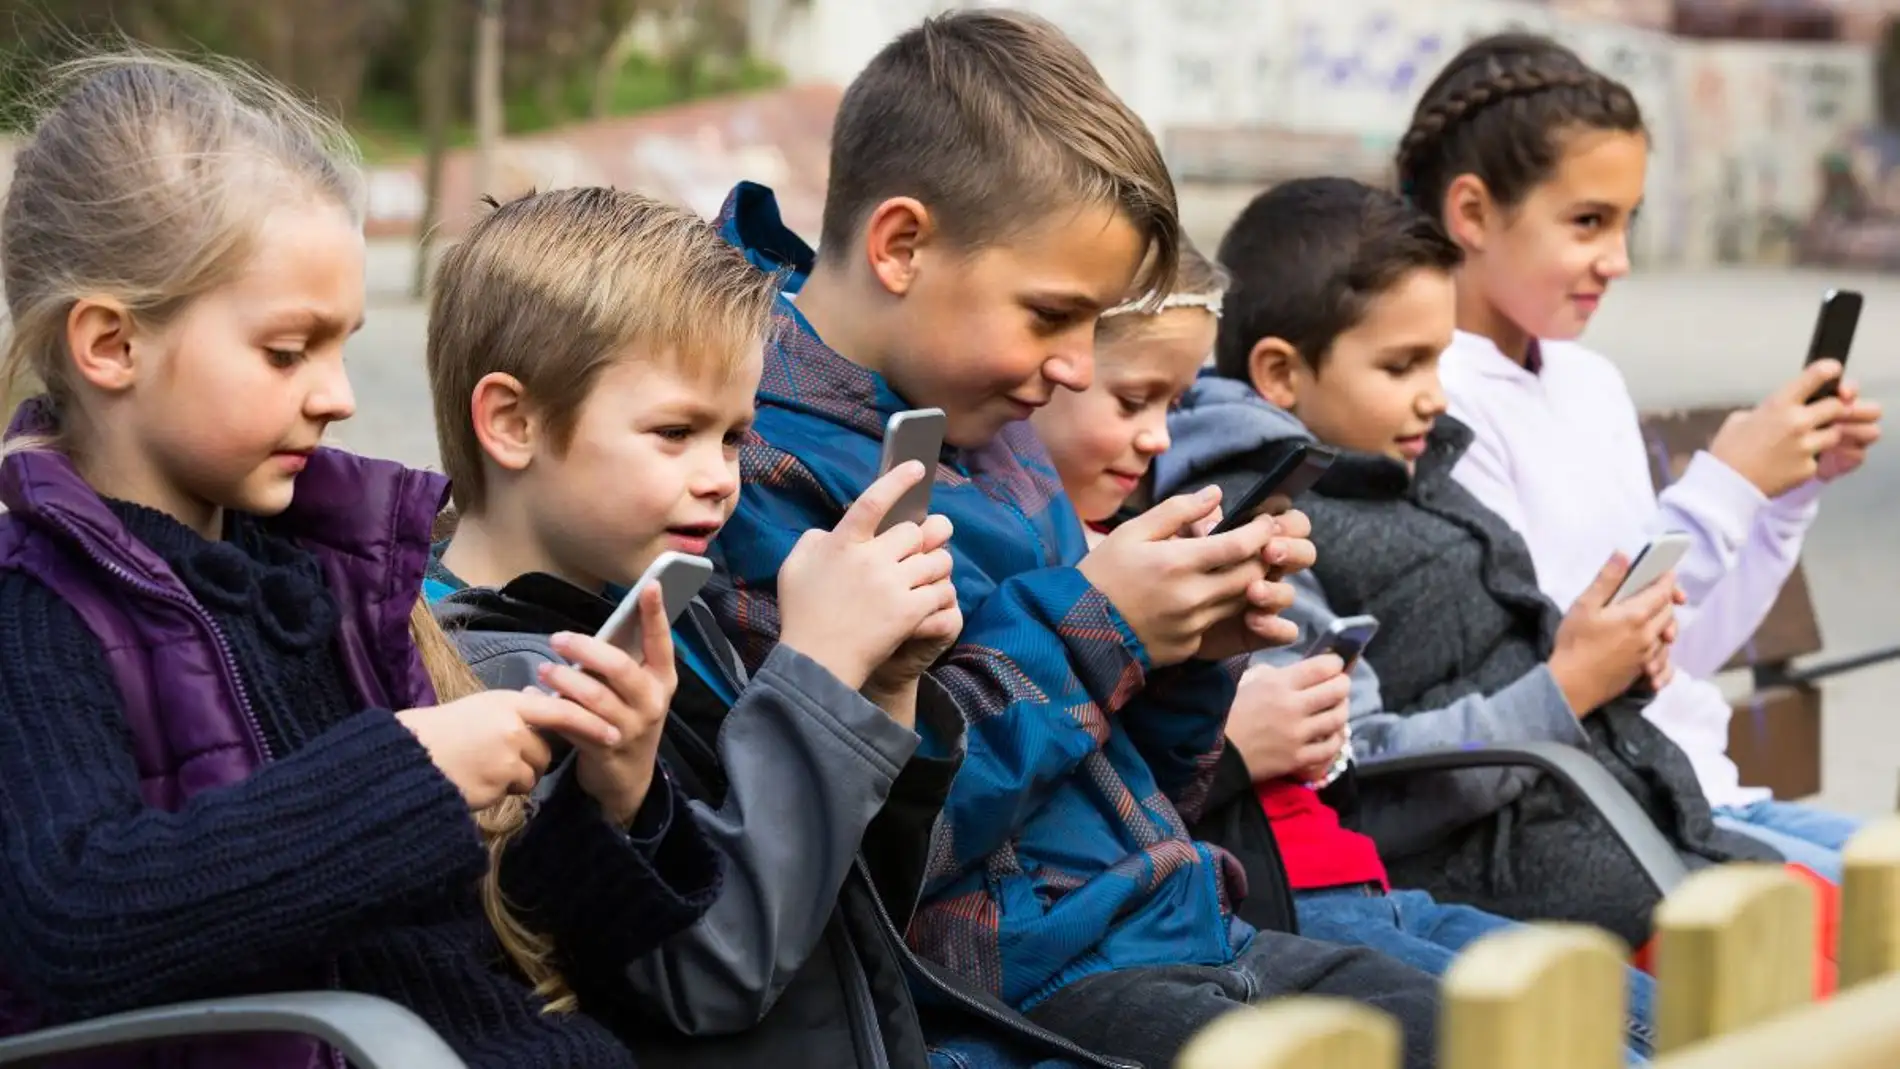 "Menores y móviles" tema de reflexión este fin de semana en Vitoria 